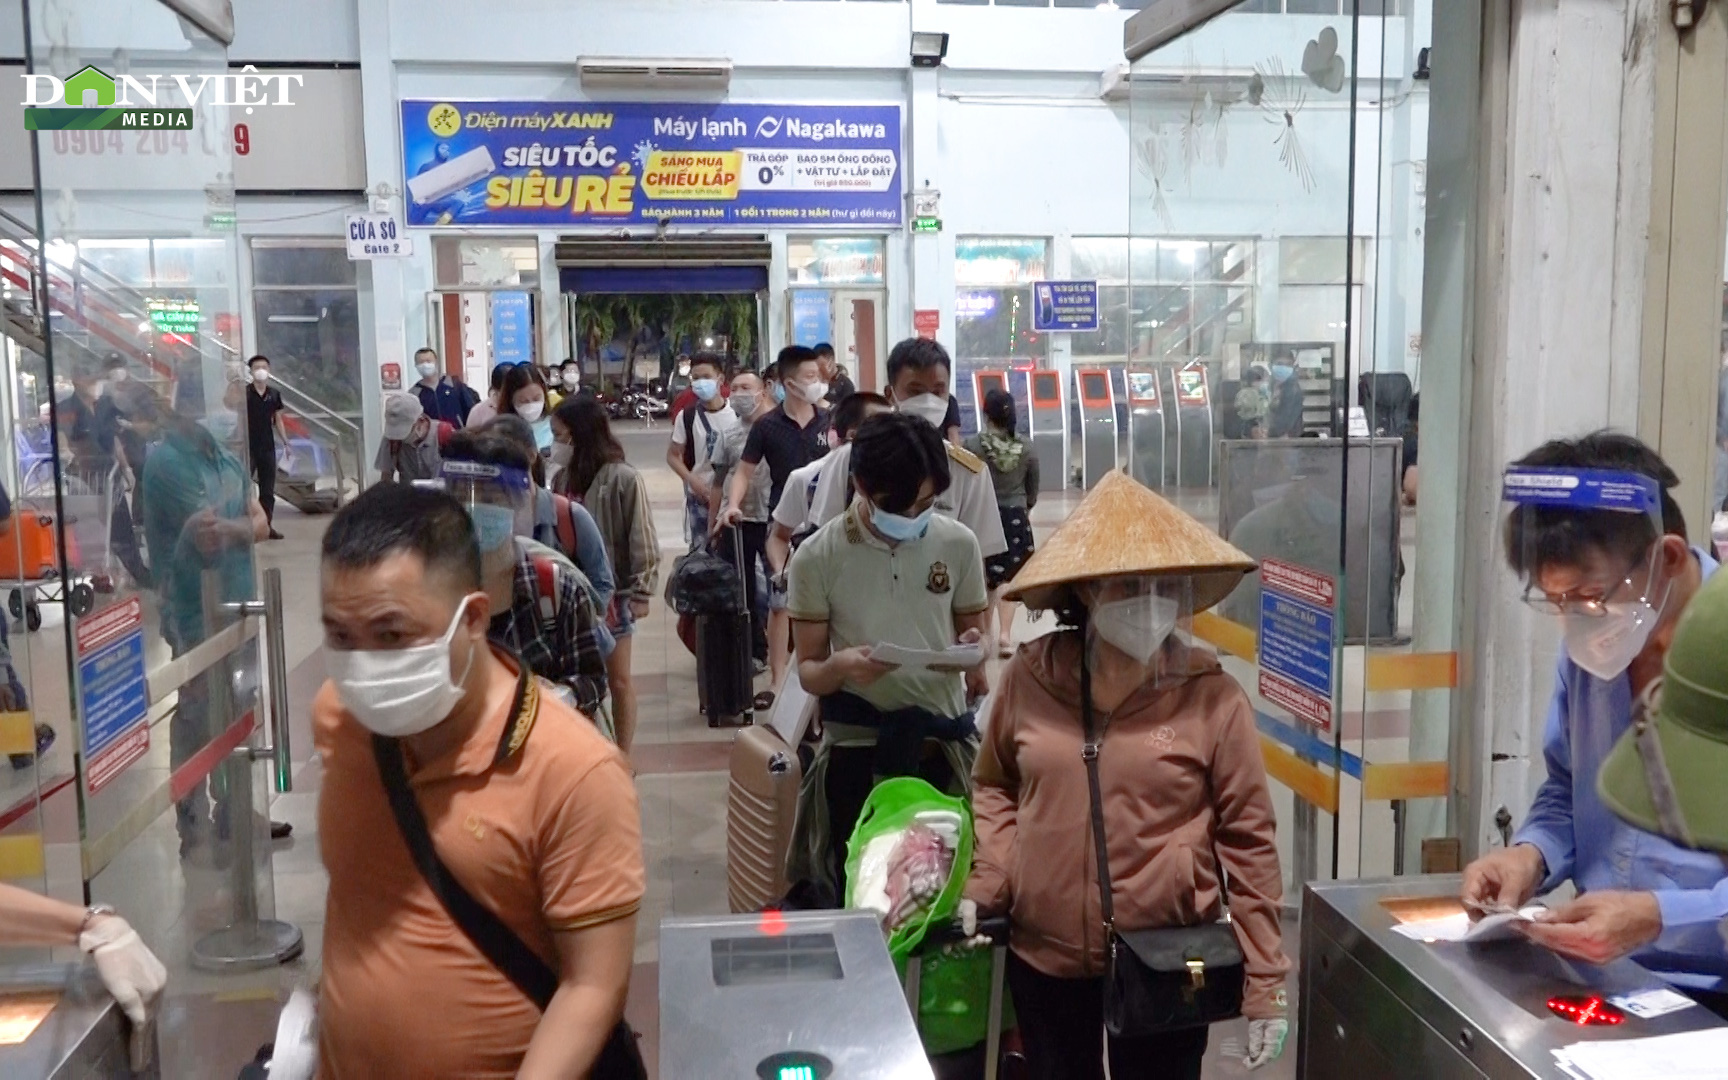 Video: Ga Sài Gòn, bến xe miền Đông tái khởi động trở lại sau nhiều tháng đóng cửa vì dịch Covid-19